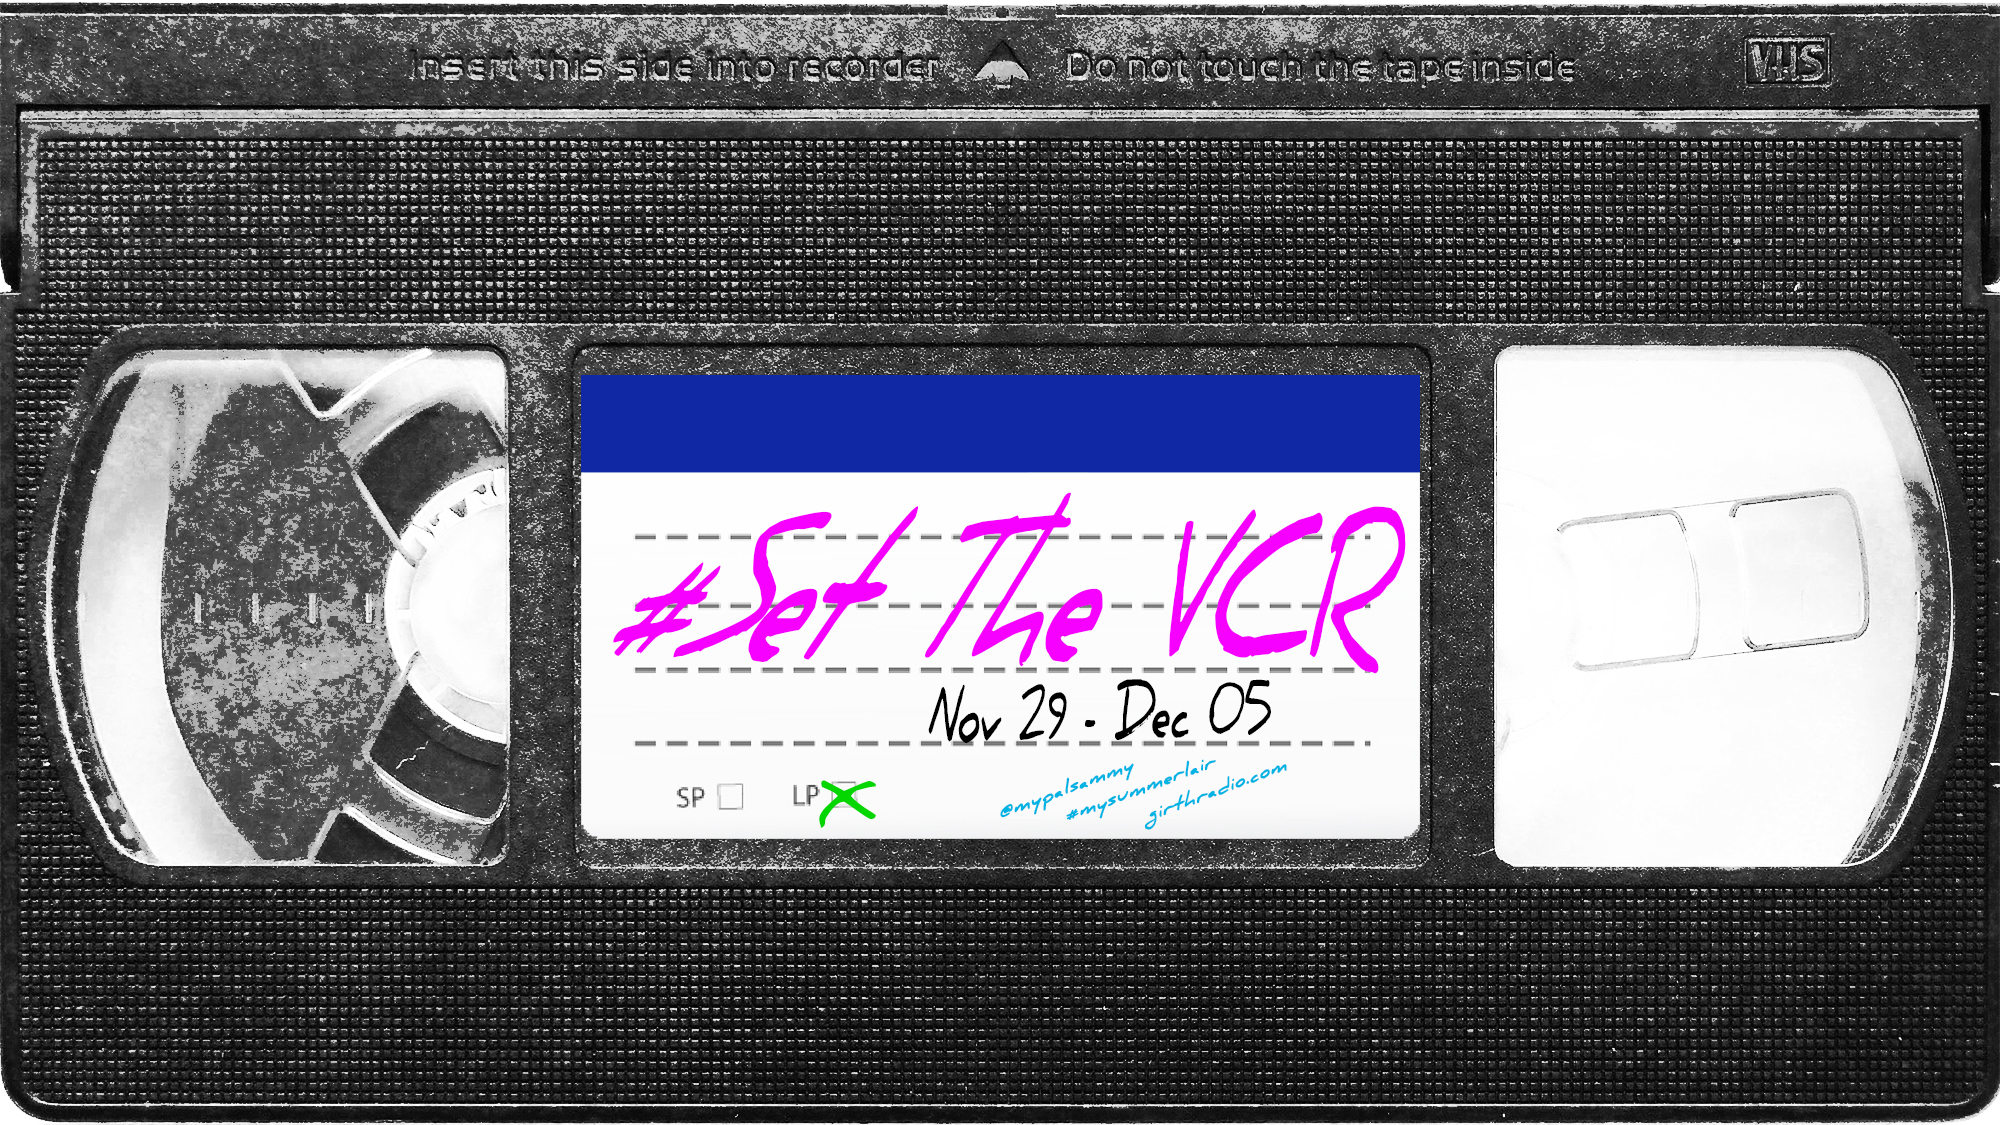 #SetTheVCR: November 29-December 5, 2020